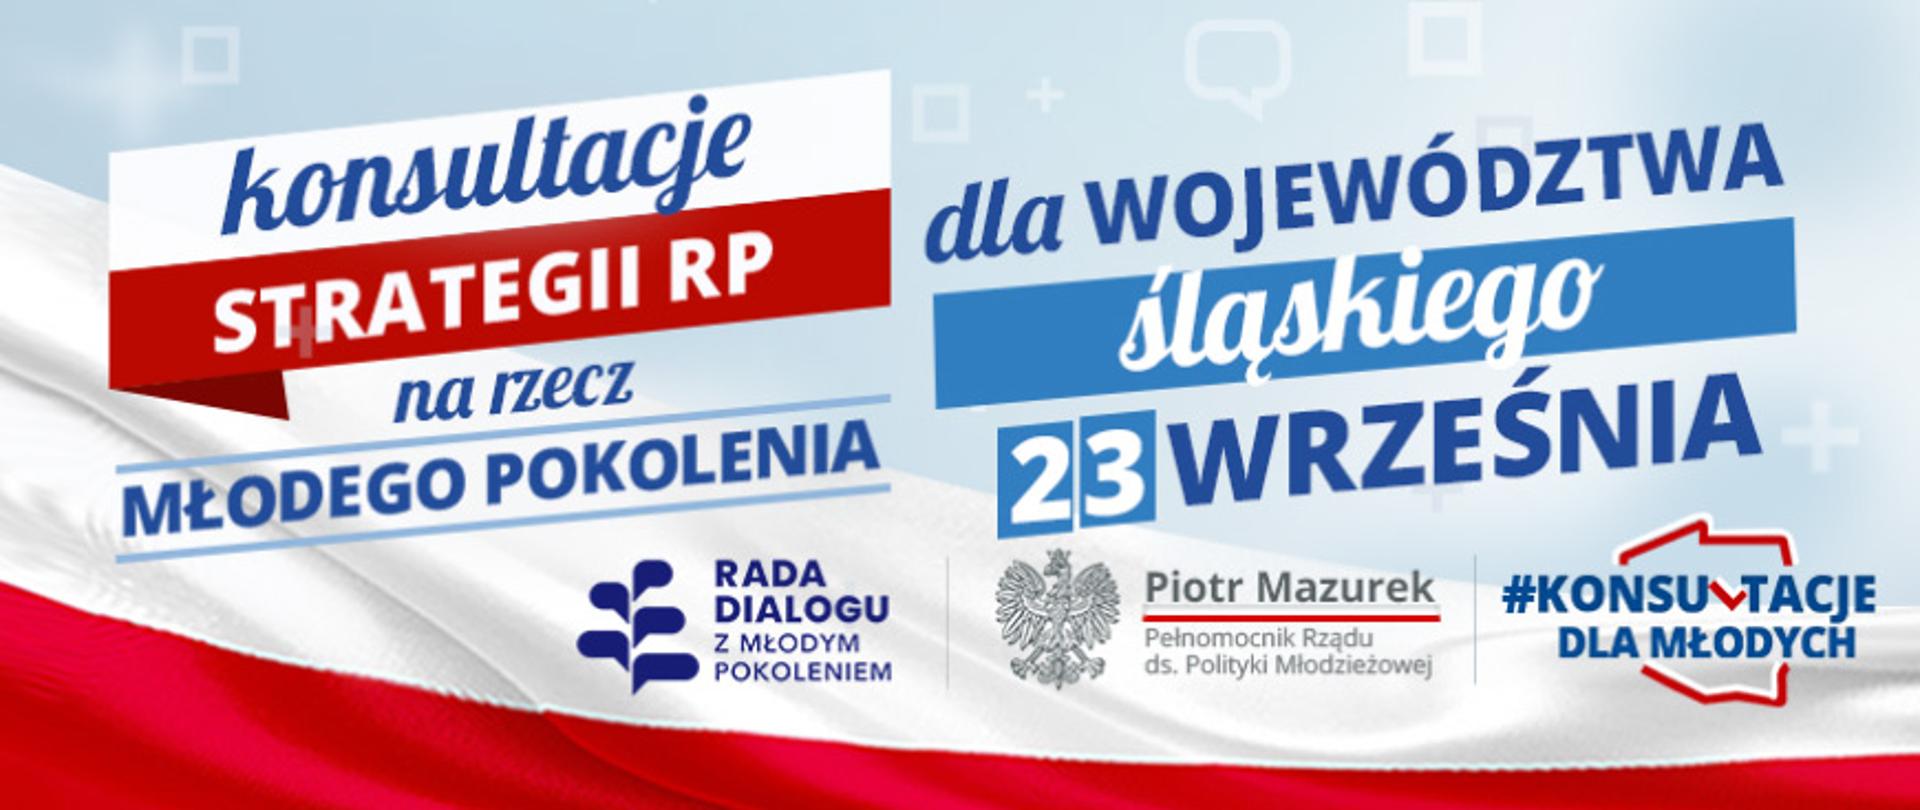 Konsultacje_slaskie_gov_PL